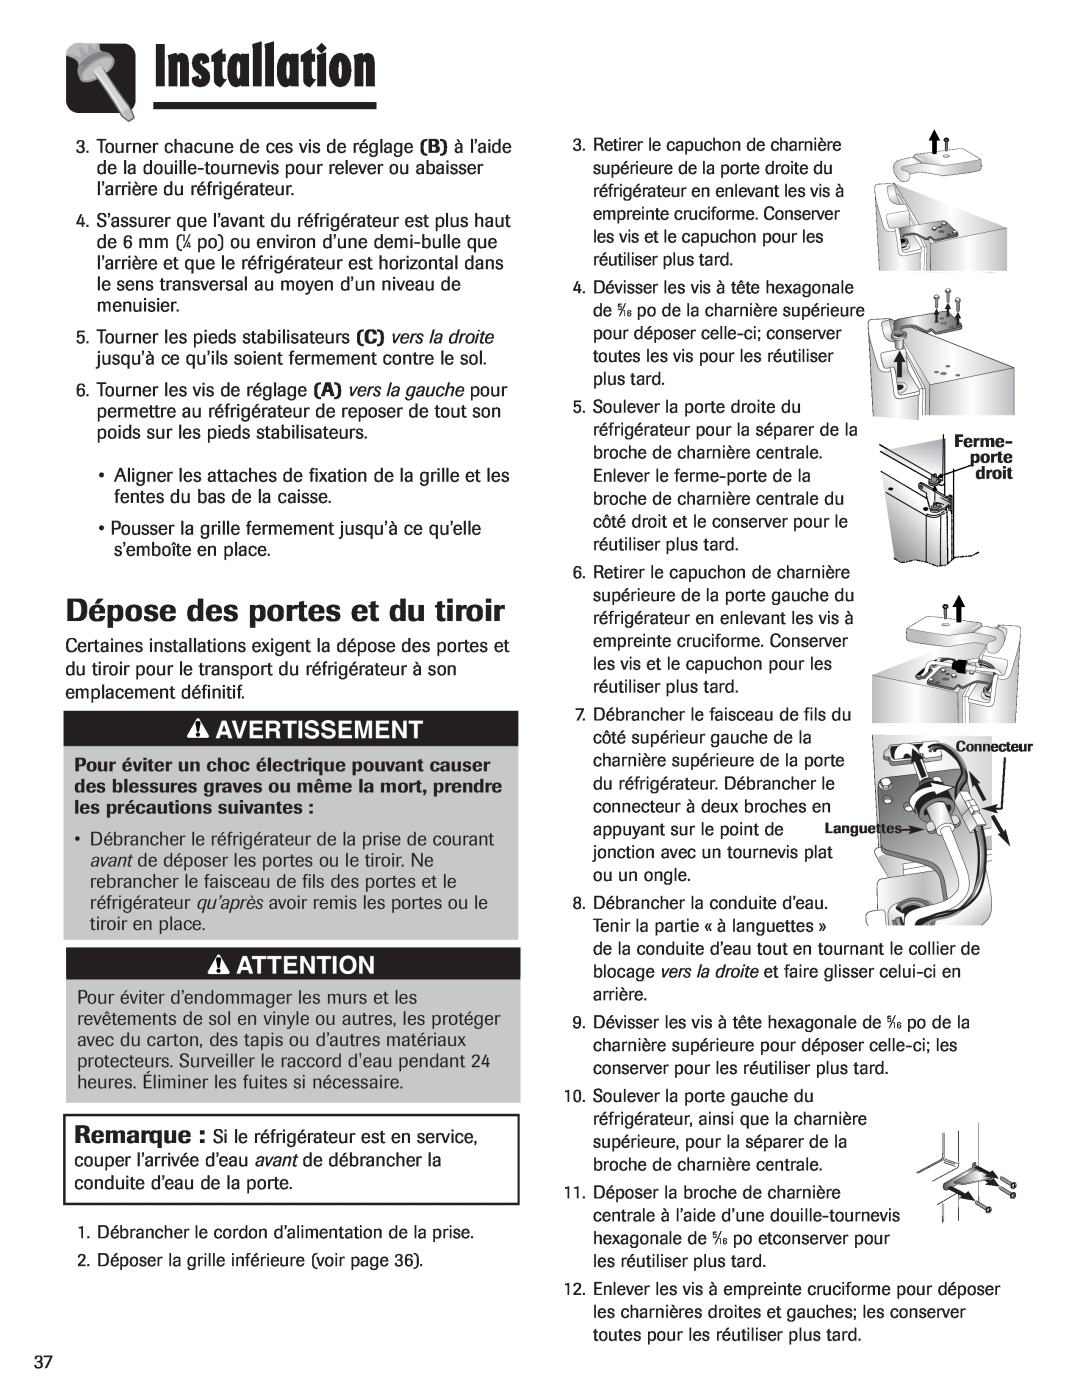 Amana AFI2538AEW important safety instructions Dépose des portes et du tiroir, Installation, Avertissement 